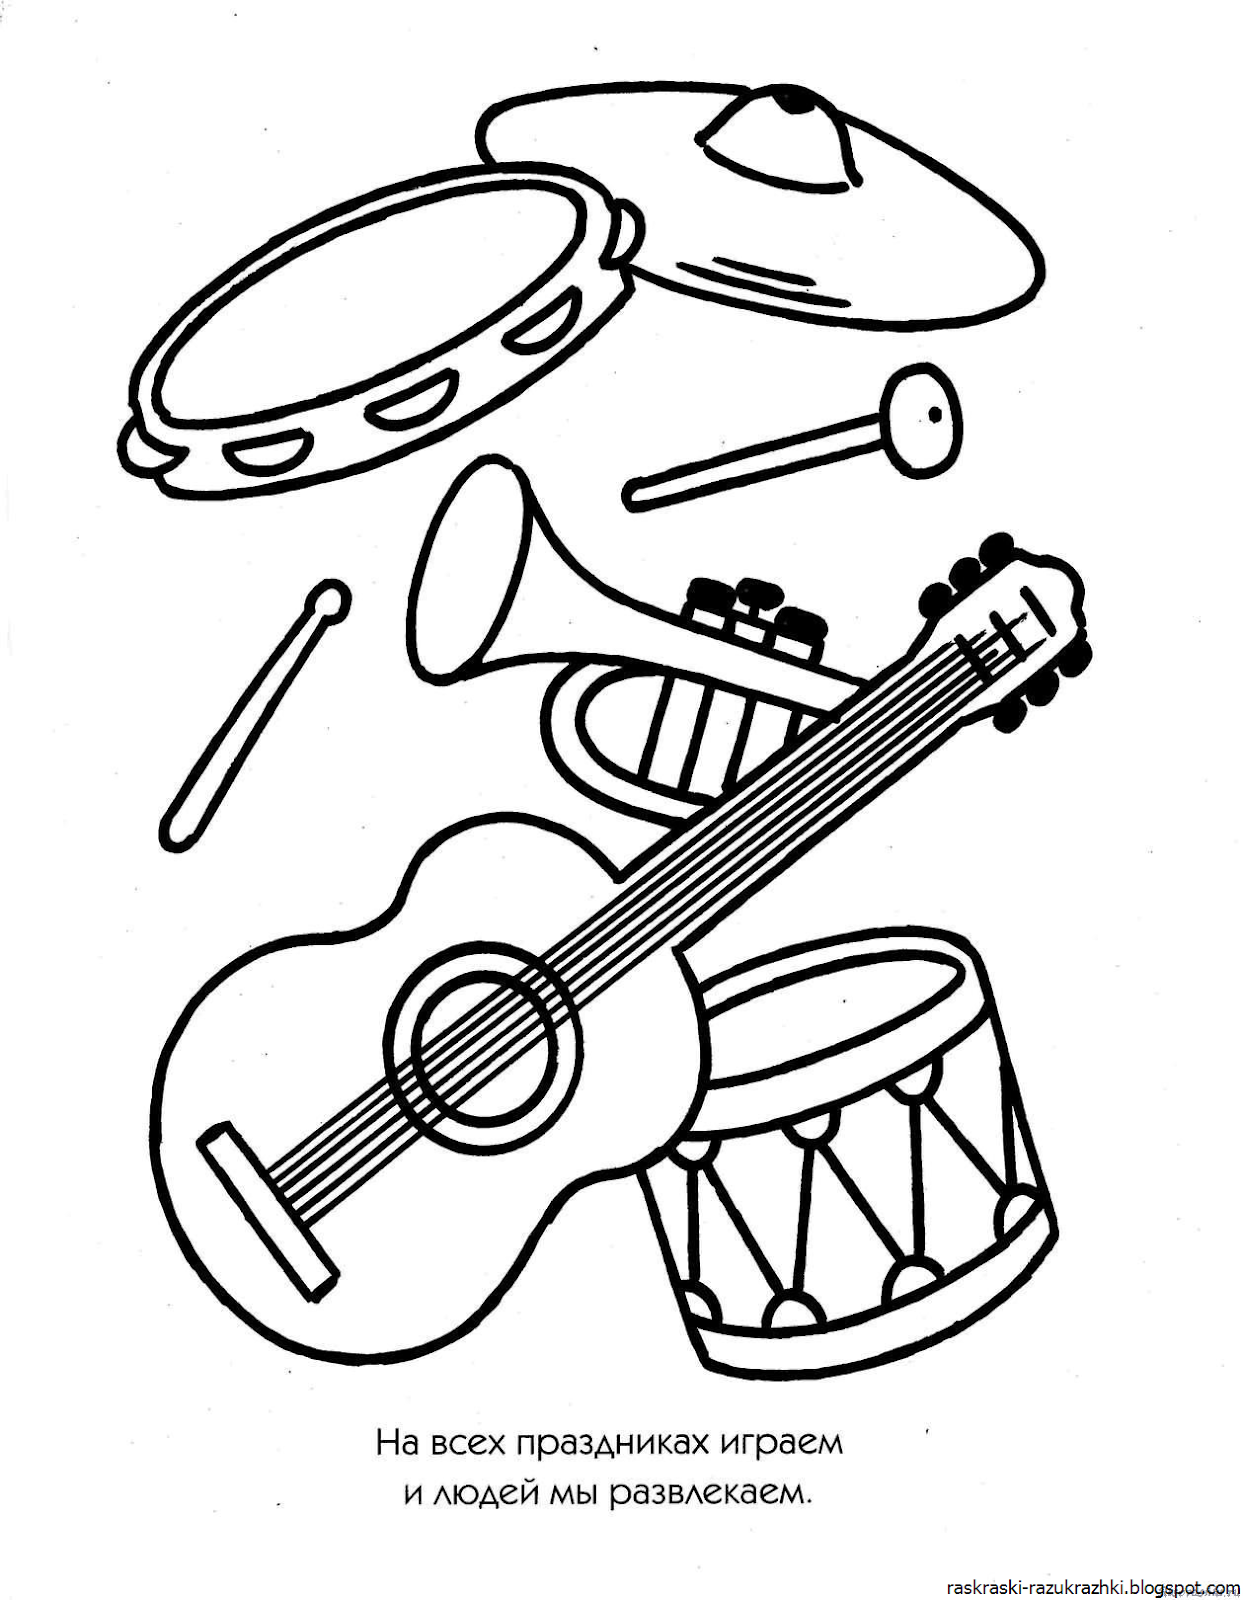 Распечатать музыкальный инструмент. Музыкальные инструменты раскраска. Раскраска для малышей музыкальные инструменты. Детские музыкальные инструменты раскраска. Раскраска музыкальные инструменты для детей.